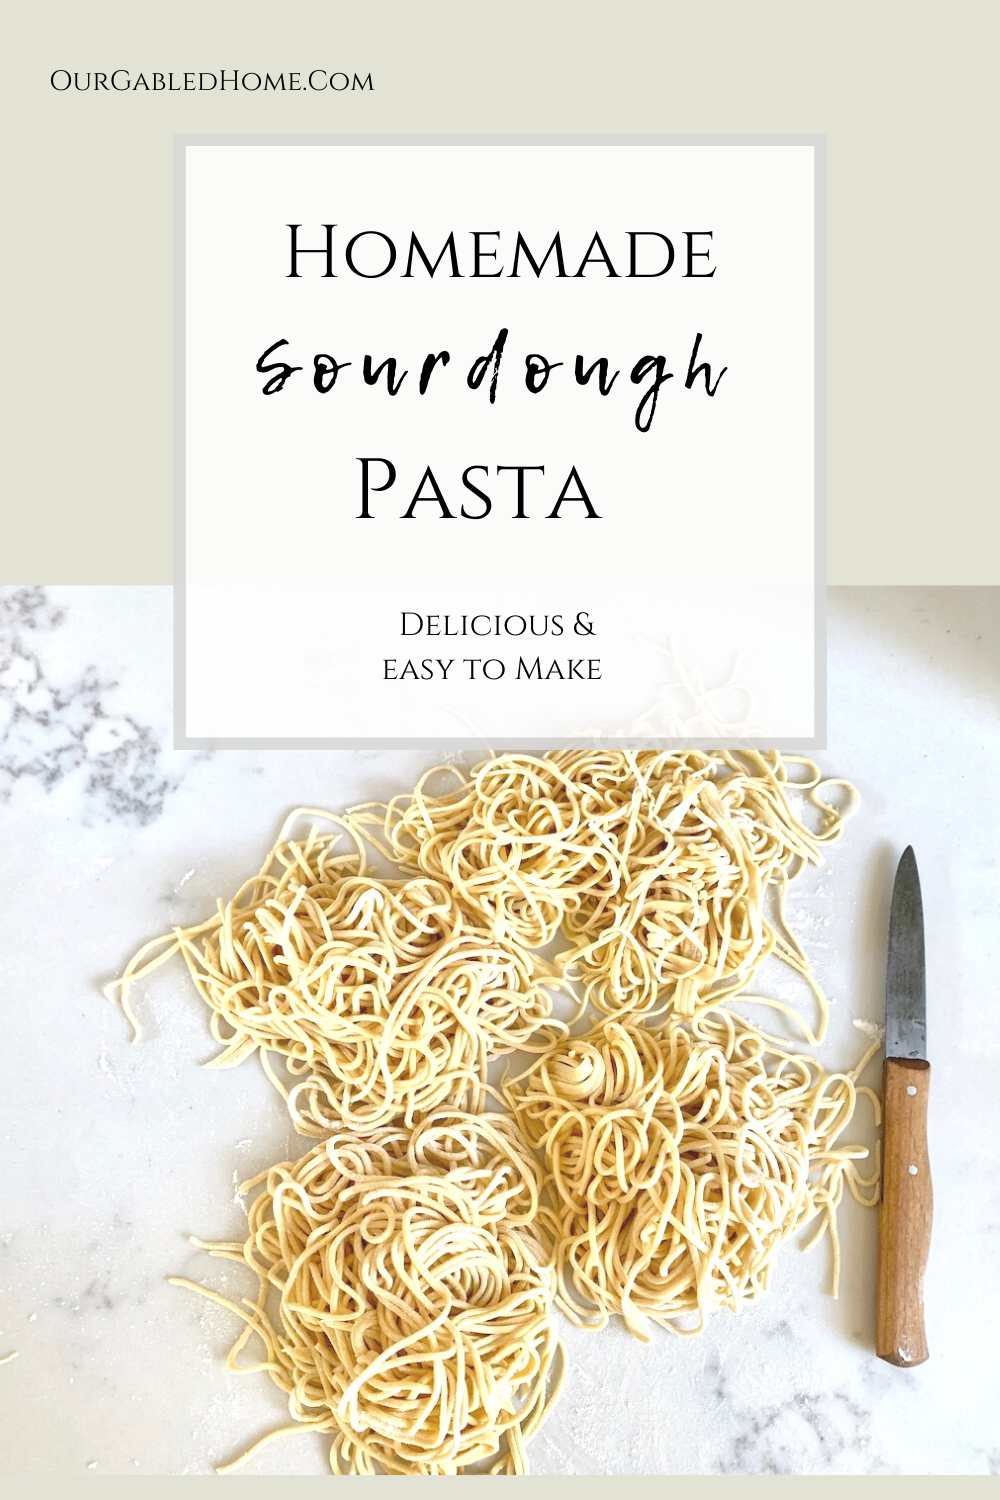 Homemade Sourdough Pasta Recipe